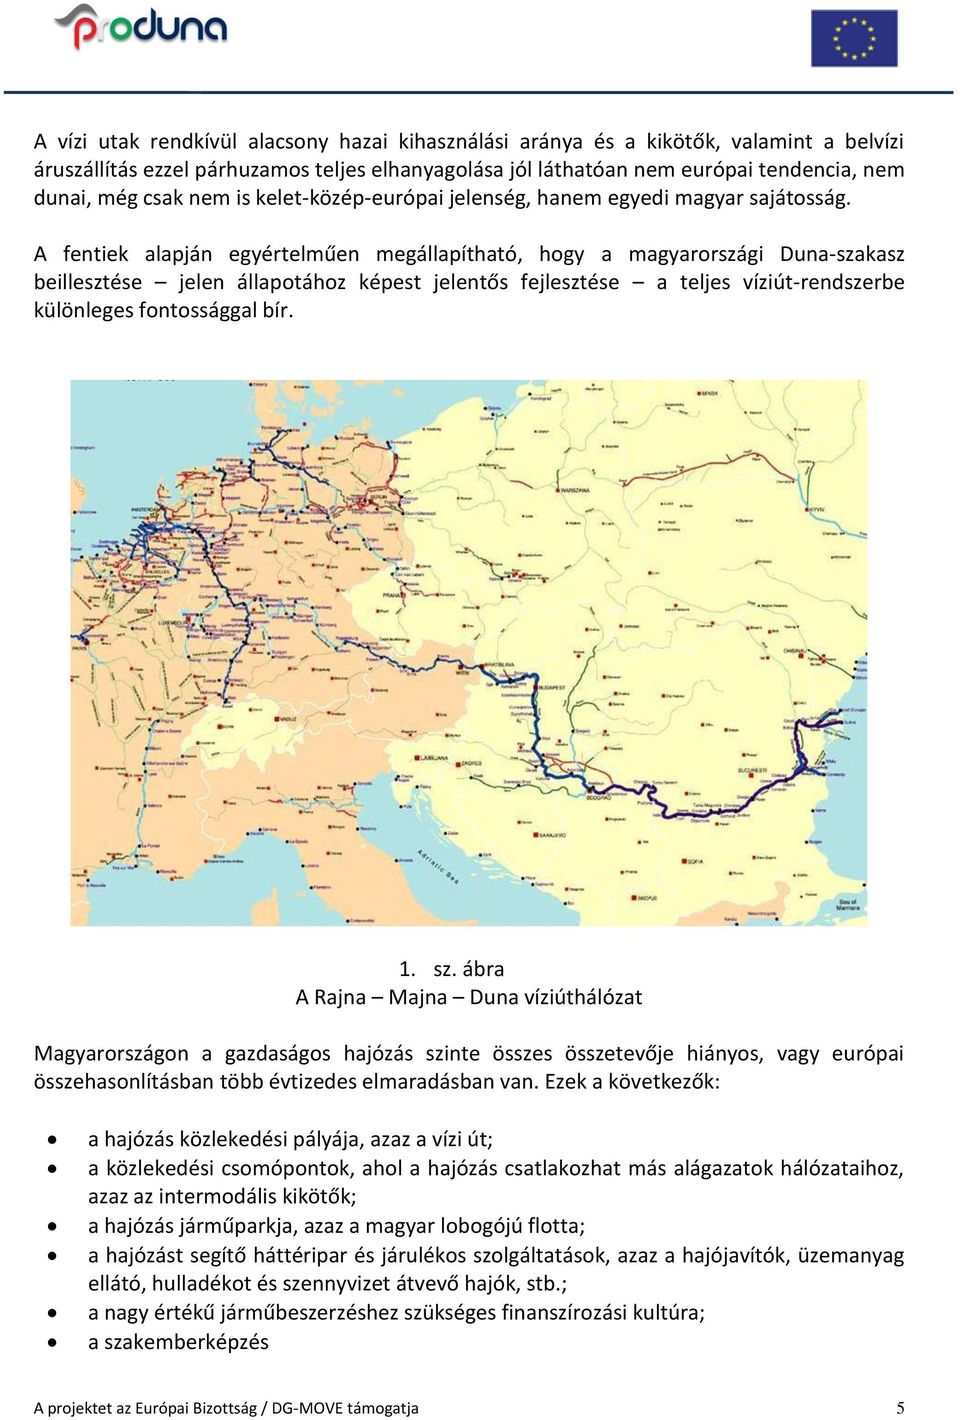 A fentiek alapján egyértelműen megállapítható, hogy a magyarországi Duna-szakasz beillesztése jelen állapotához képest jelentős fejlesztése a teljes víziút-rendszerbe különleges fontossággal bír. 1.